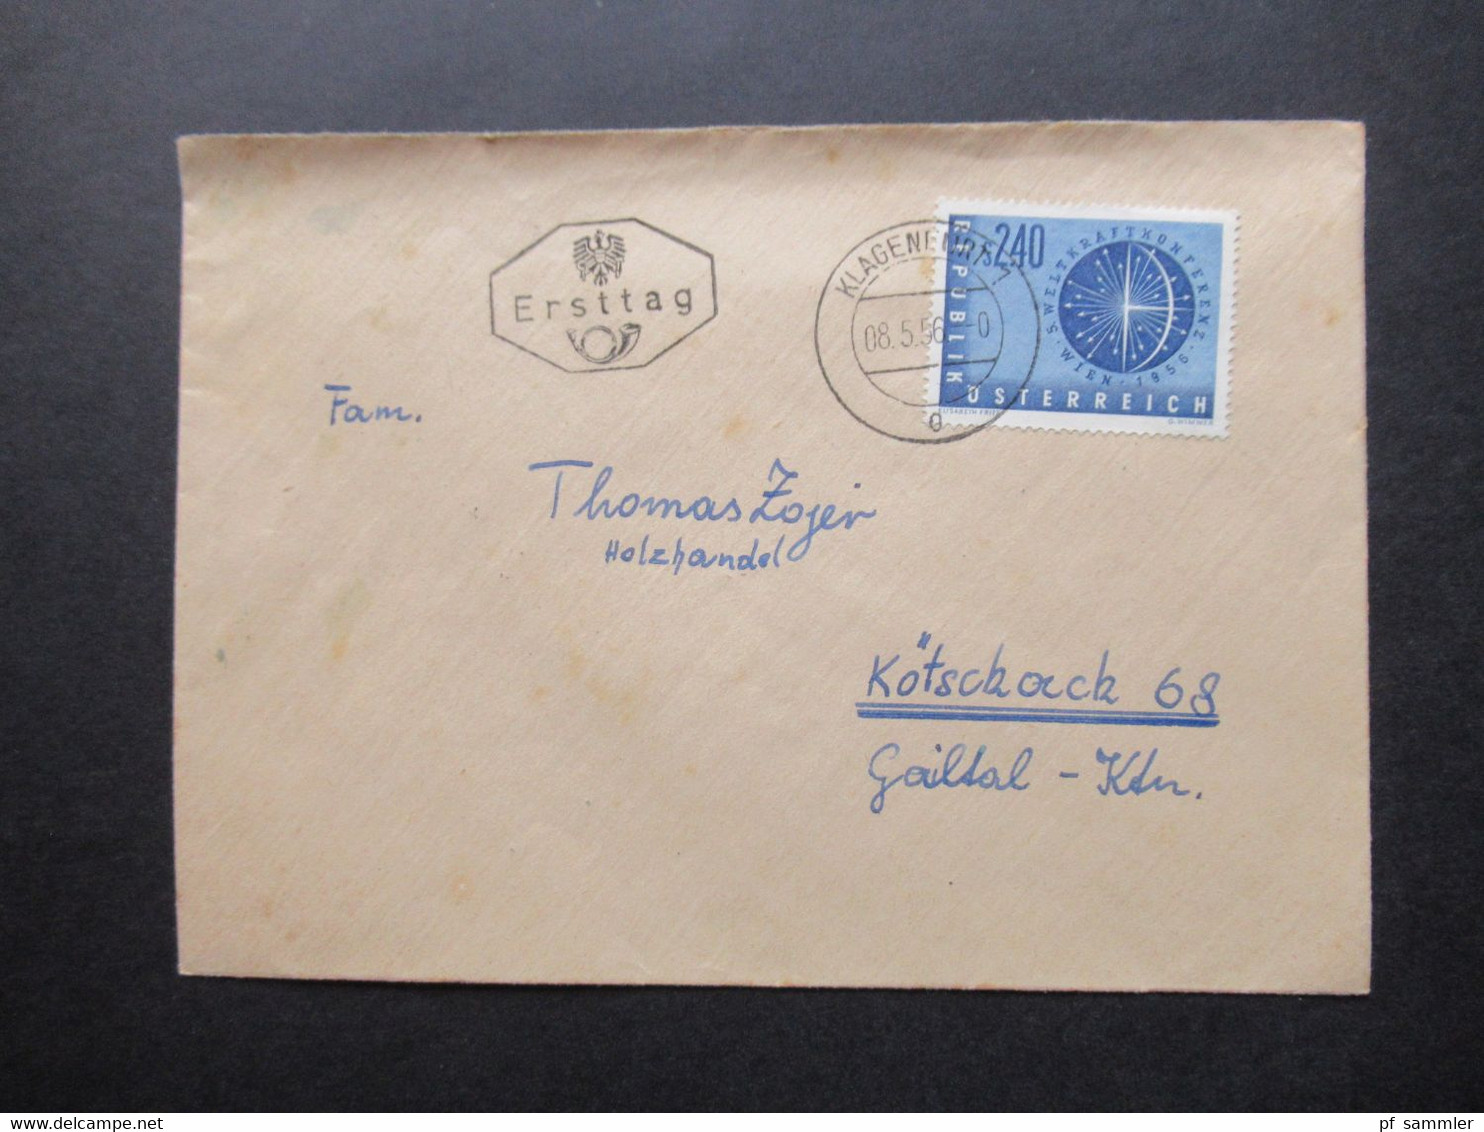 Österreich 1948 - 1960 FDC / Sonderstempel / Sonderbelege teils 4er Blocks und Randstücke hoher Katalogwert!! 84 Belege